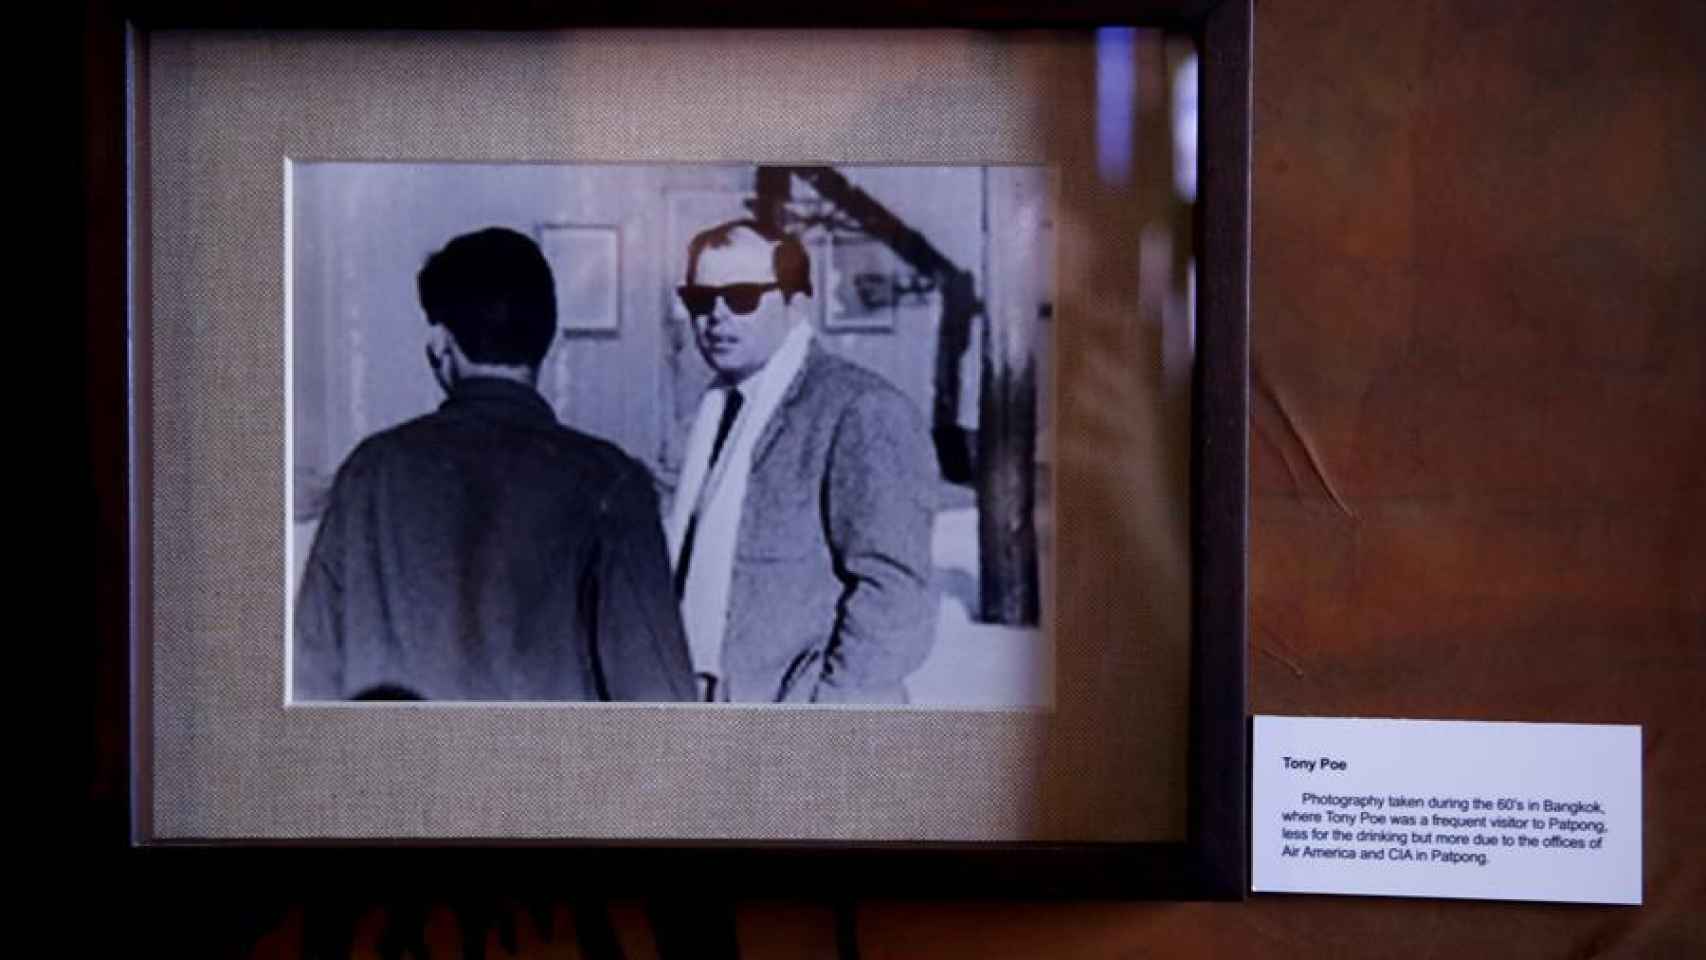 Una fotografía del oficial de la CIA Tony Poe en el Museo Patpong en Bangkok.